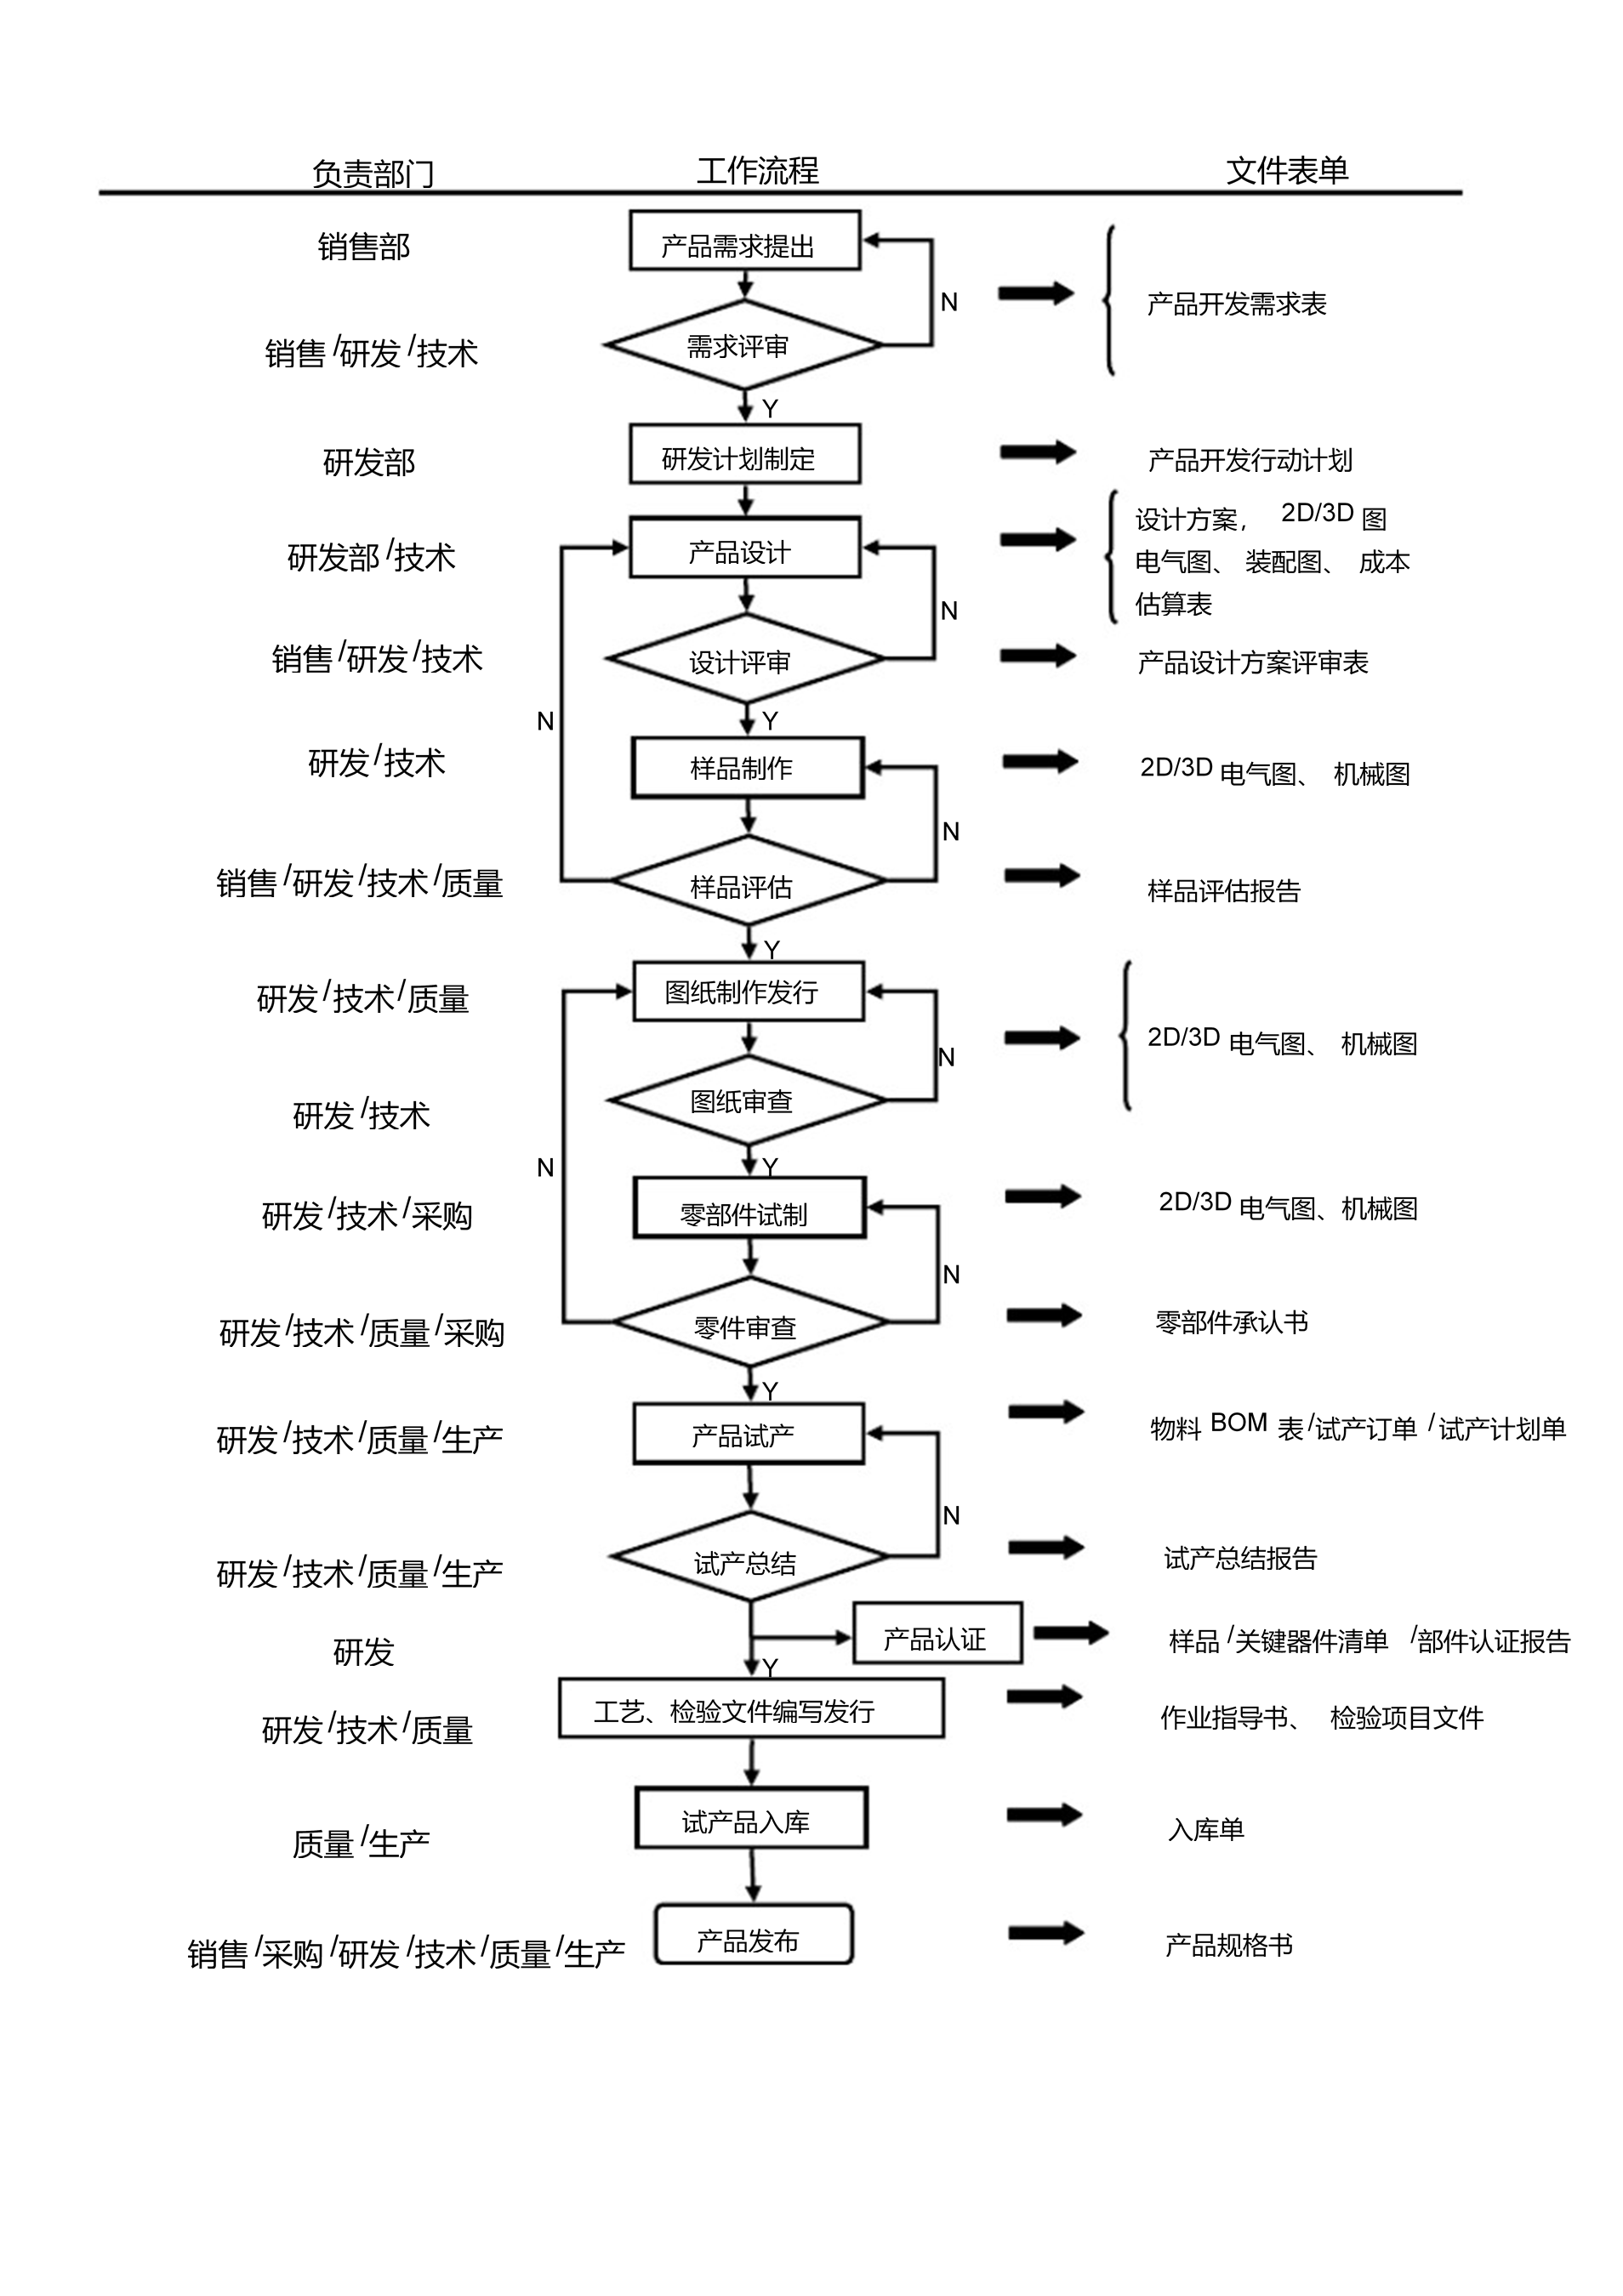 研发流程图（中文版）2020.01.07.png